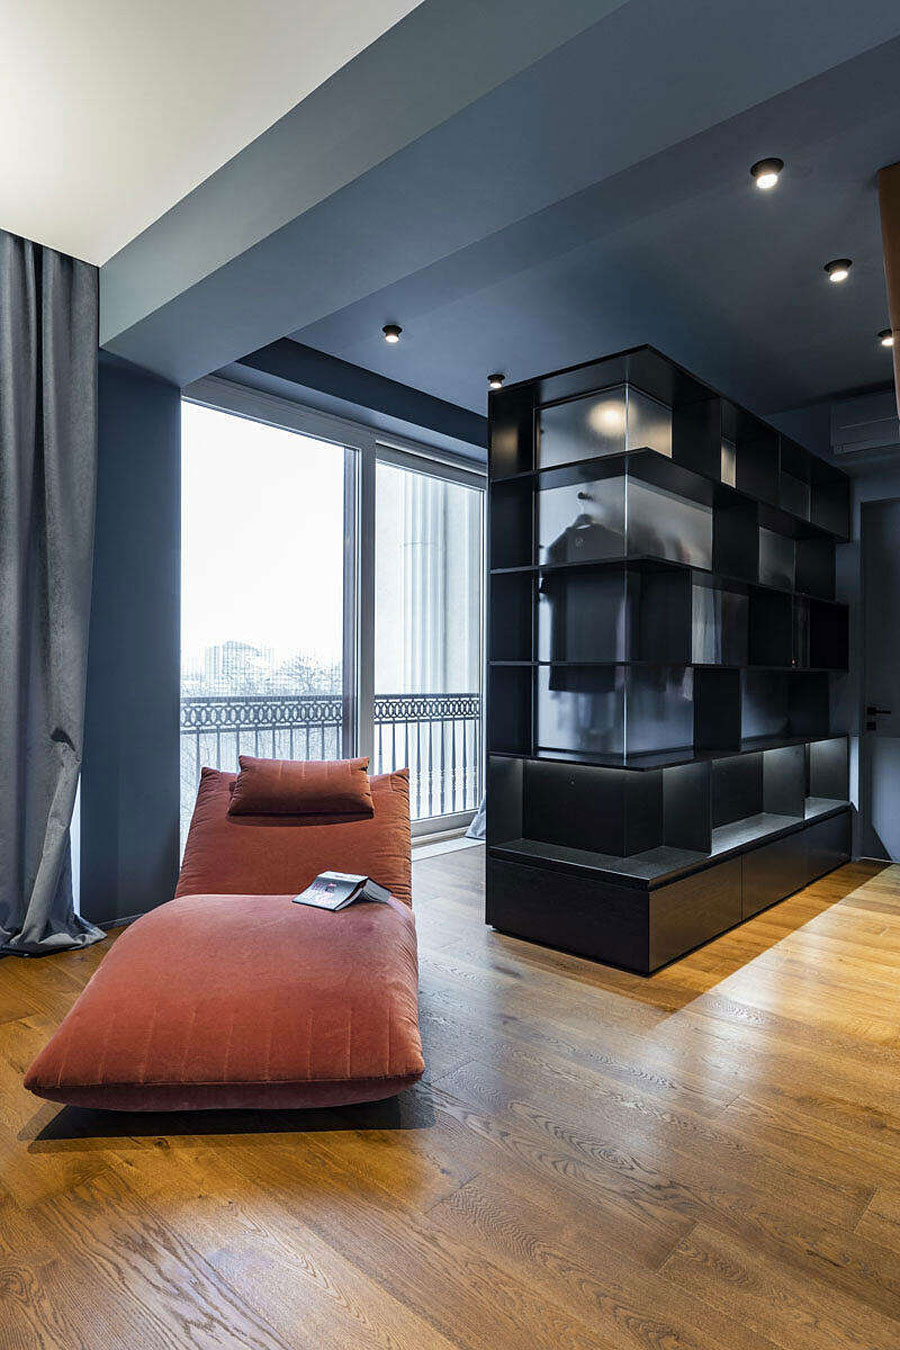 Het ontwerp van deze slaapkamer is gebaseerd op een luxe hotelkamer